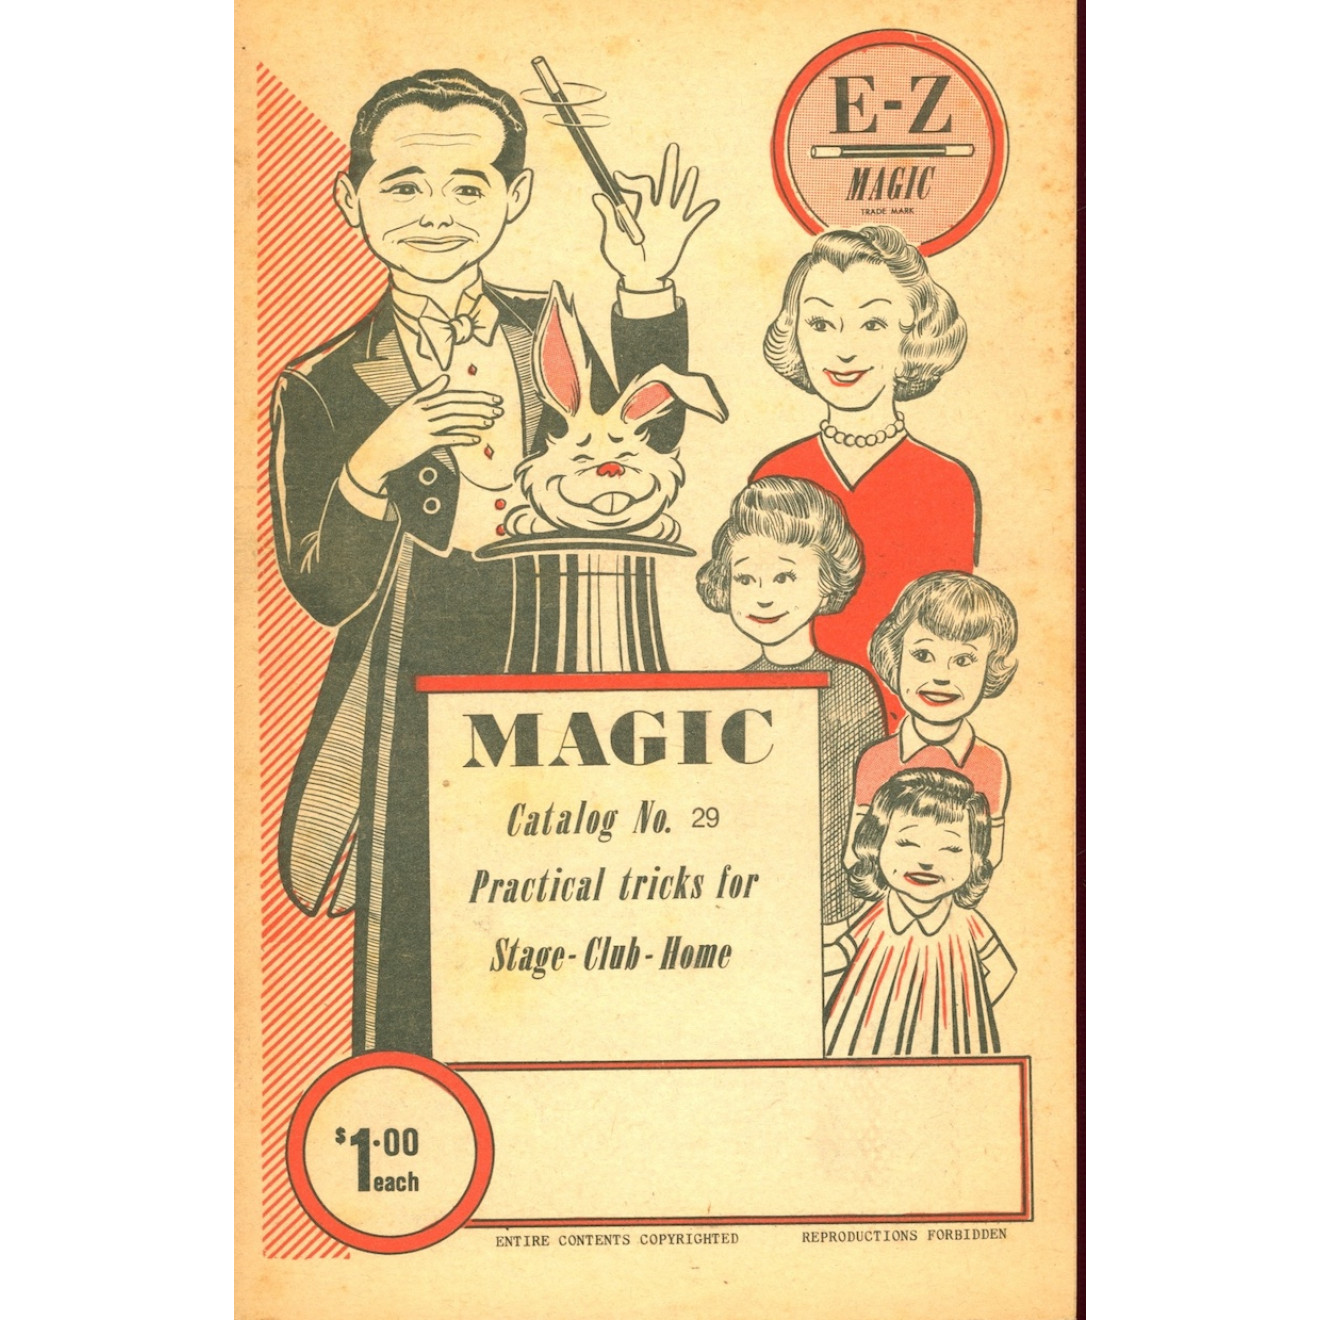 Magic Catalog No. 29